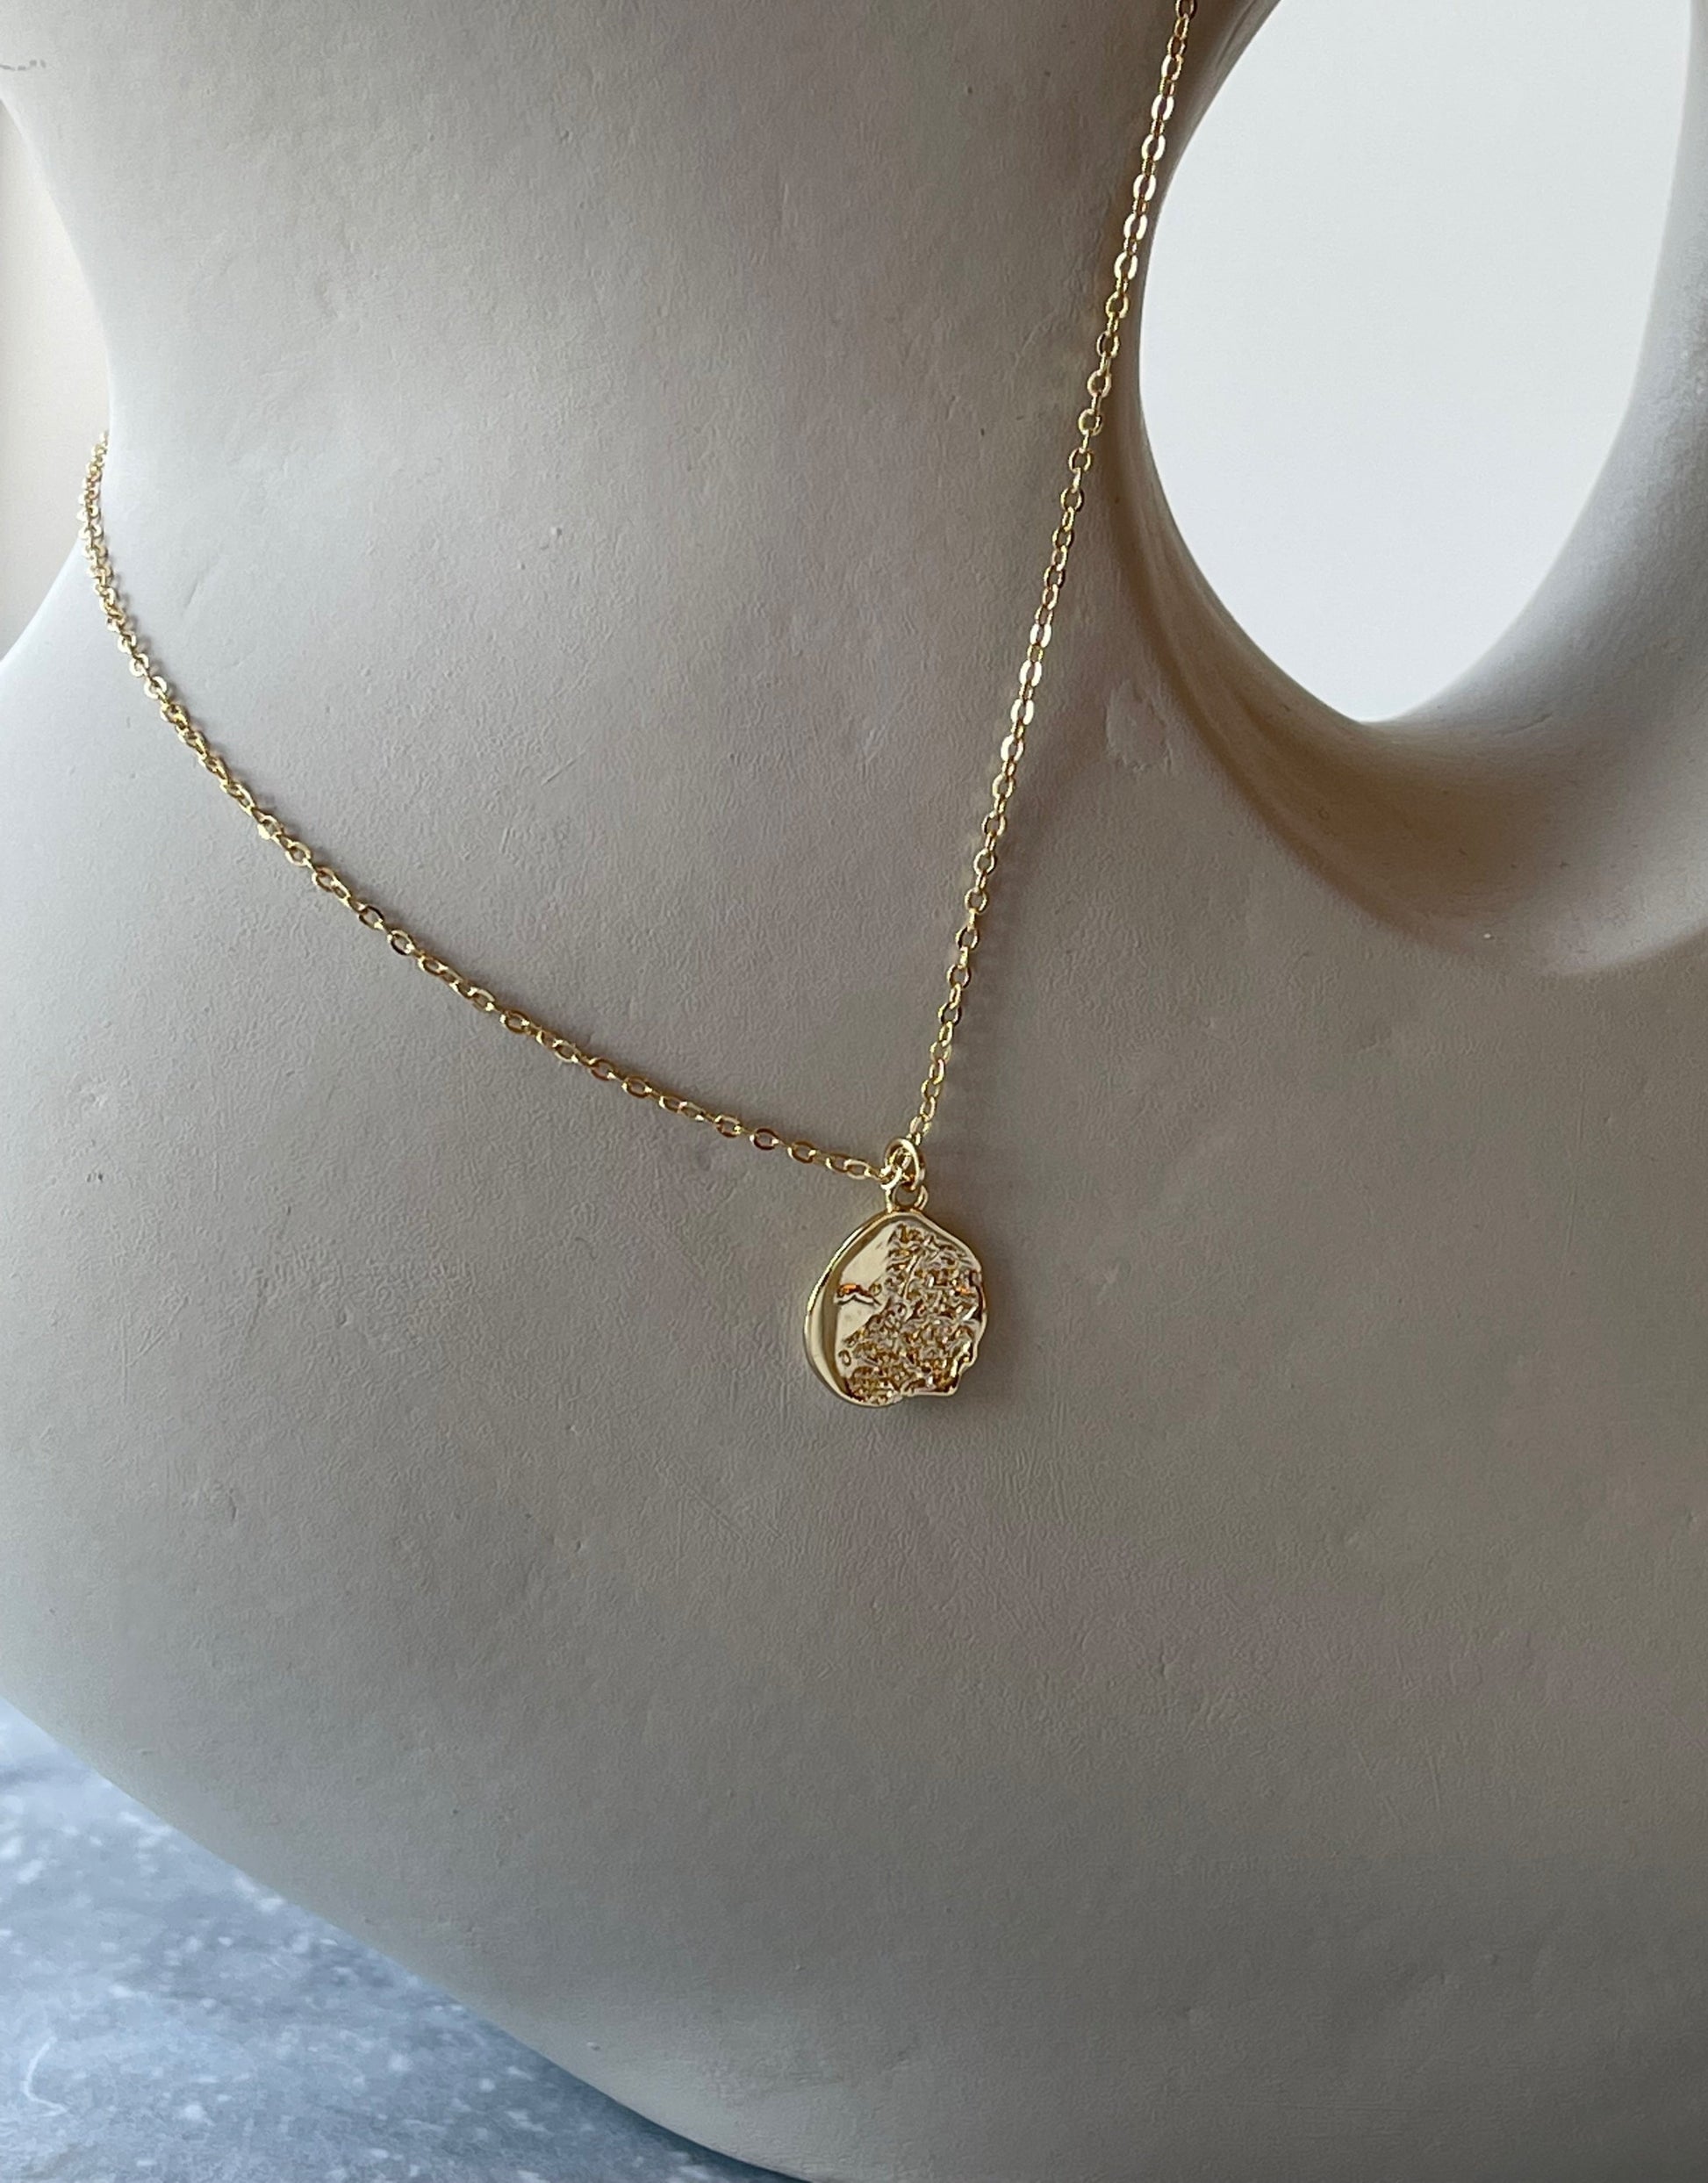 Aurora halskæde i guld.   Guld halskæde med vedhæng i et unikt design.  Materiale: S925 sterling sølv, guldbelagt Størrelse: 45 cm - kæden er justerbar